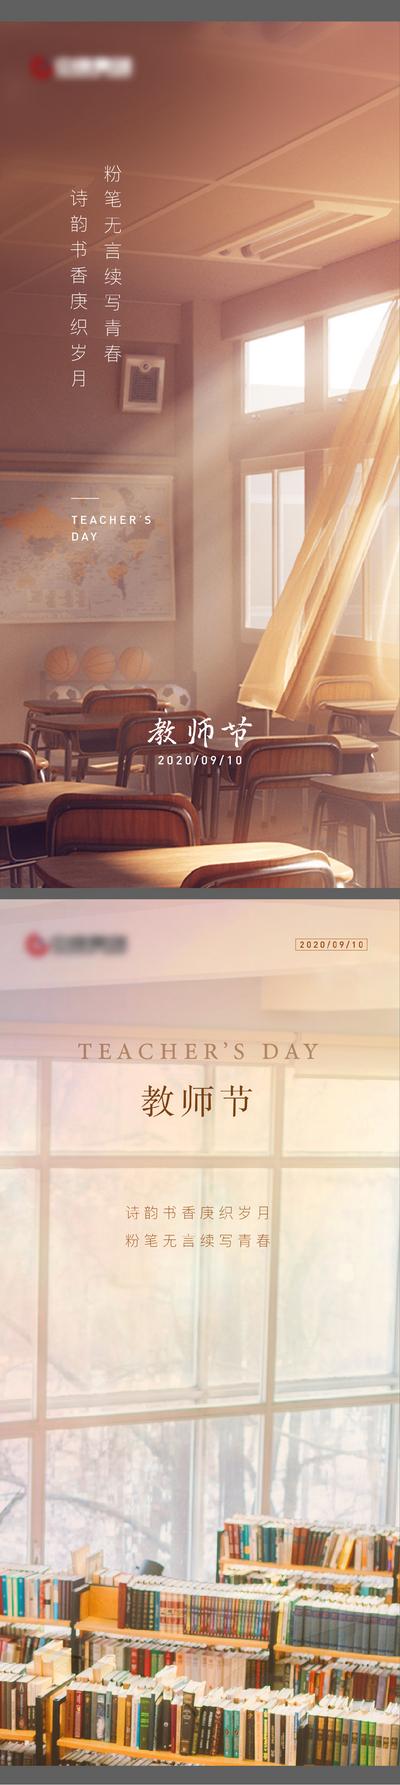 南门网 海报 房地产 系列 教师节 公历节日 教室 地图 书架